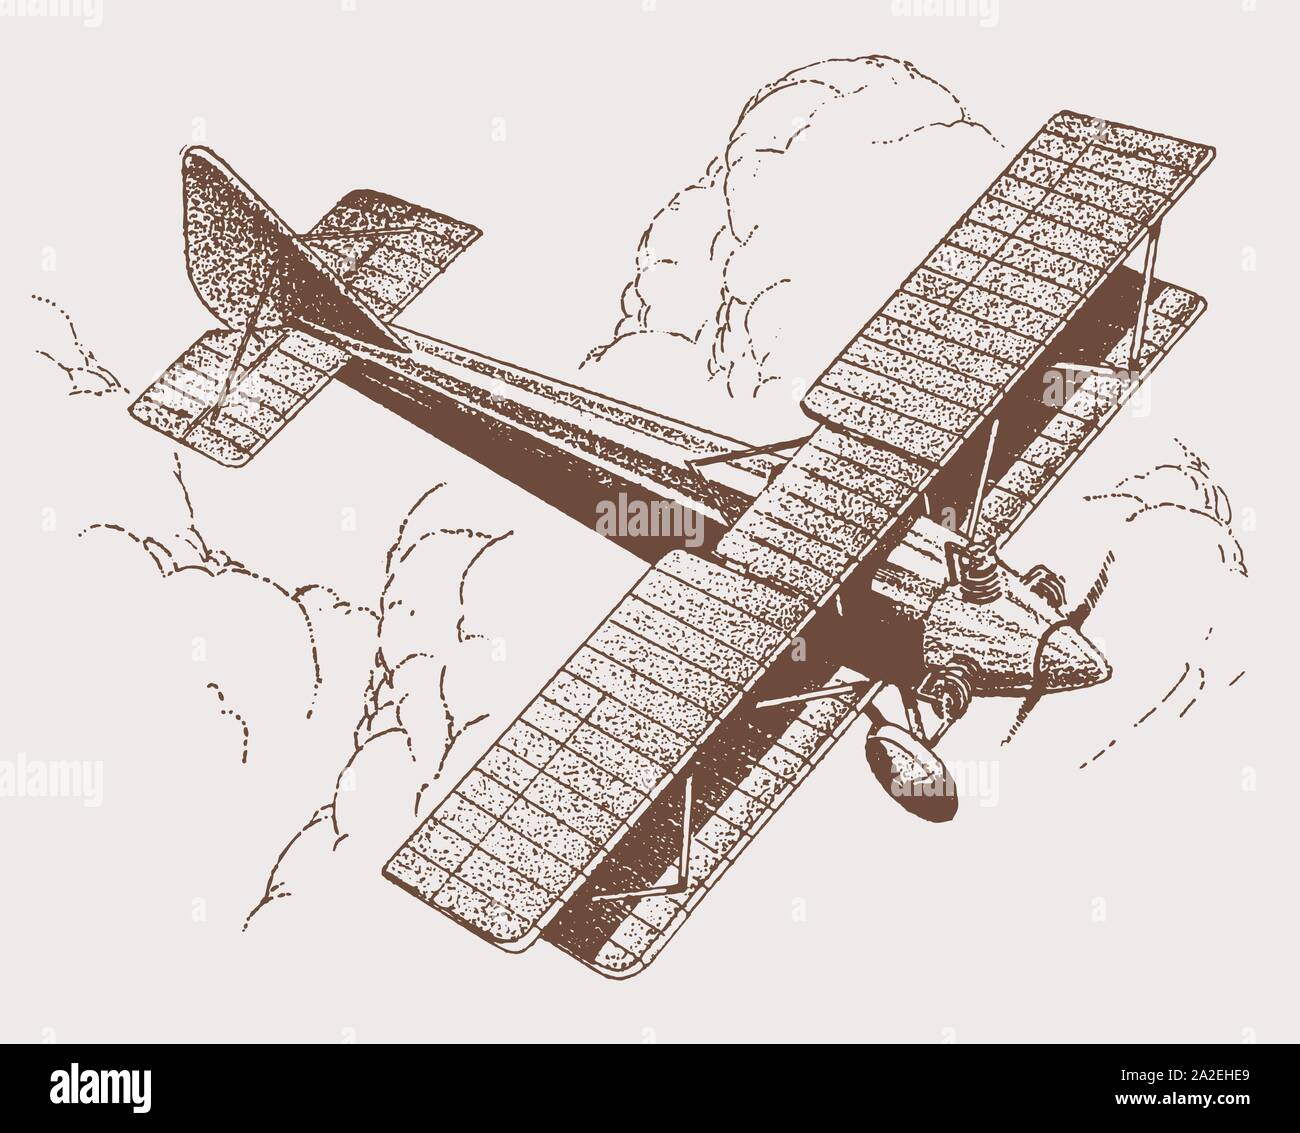 Historische Flugzeug mit klappbaren Flügeln in der Ansicht von oben fliegen über großen Cumuluswolken. Abbildung: Nach einer Lithographie aus dem frühen 20. Jahrhundert Stock Vektor